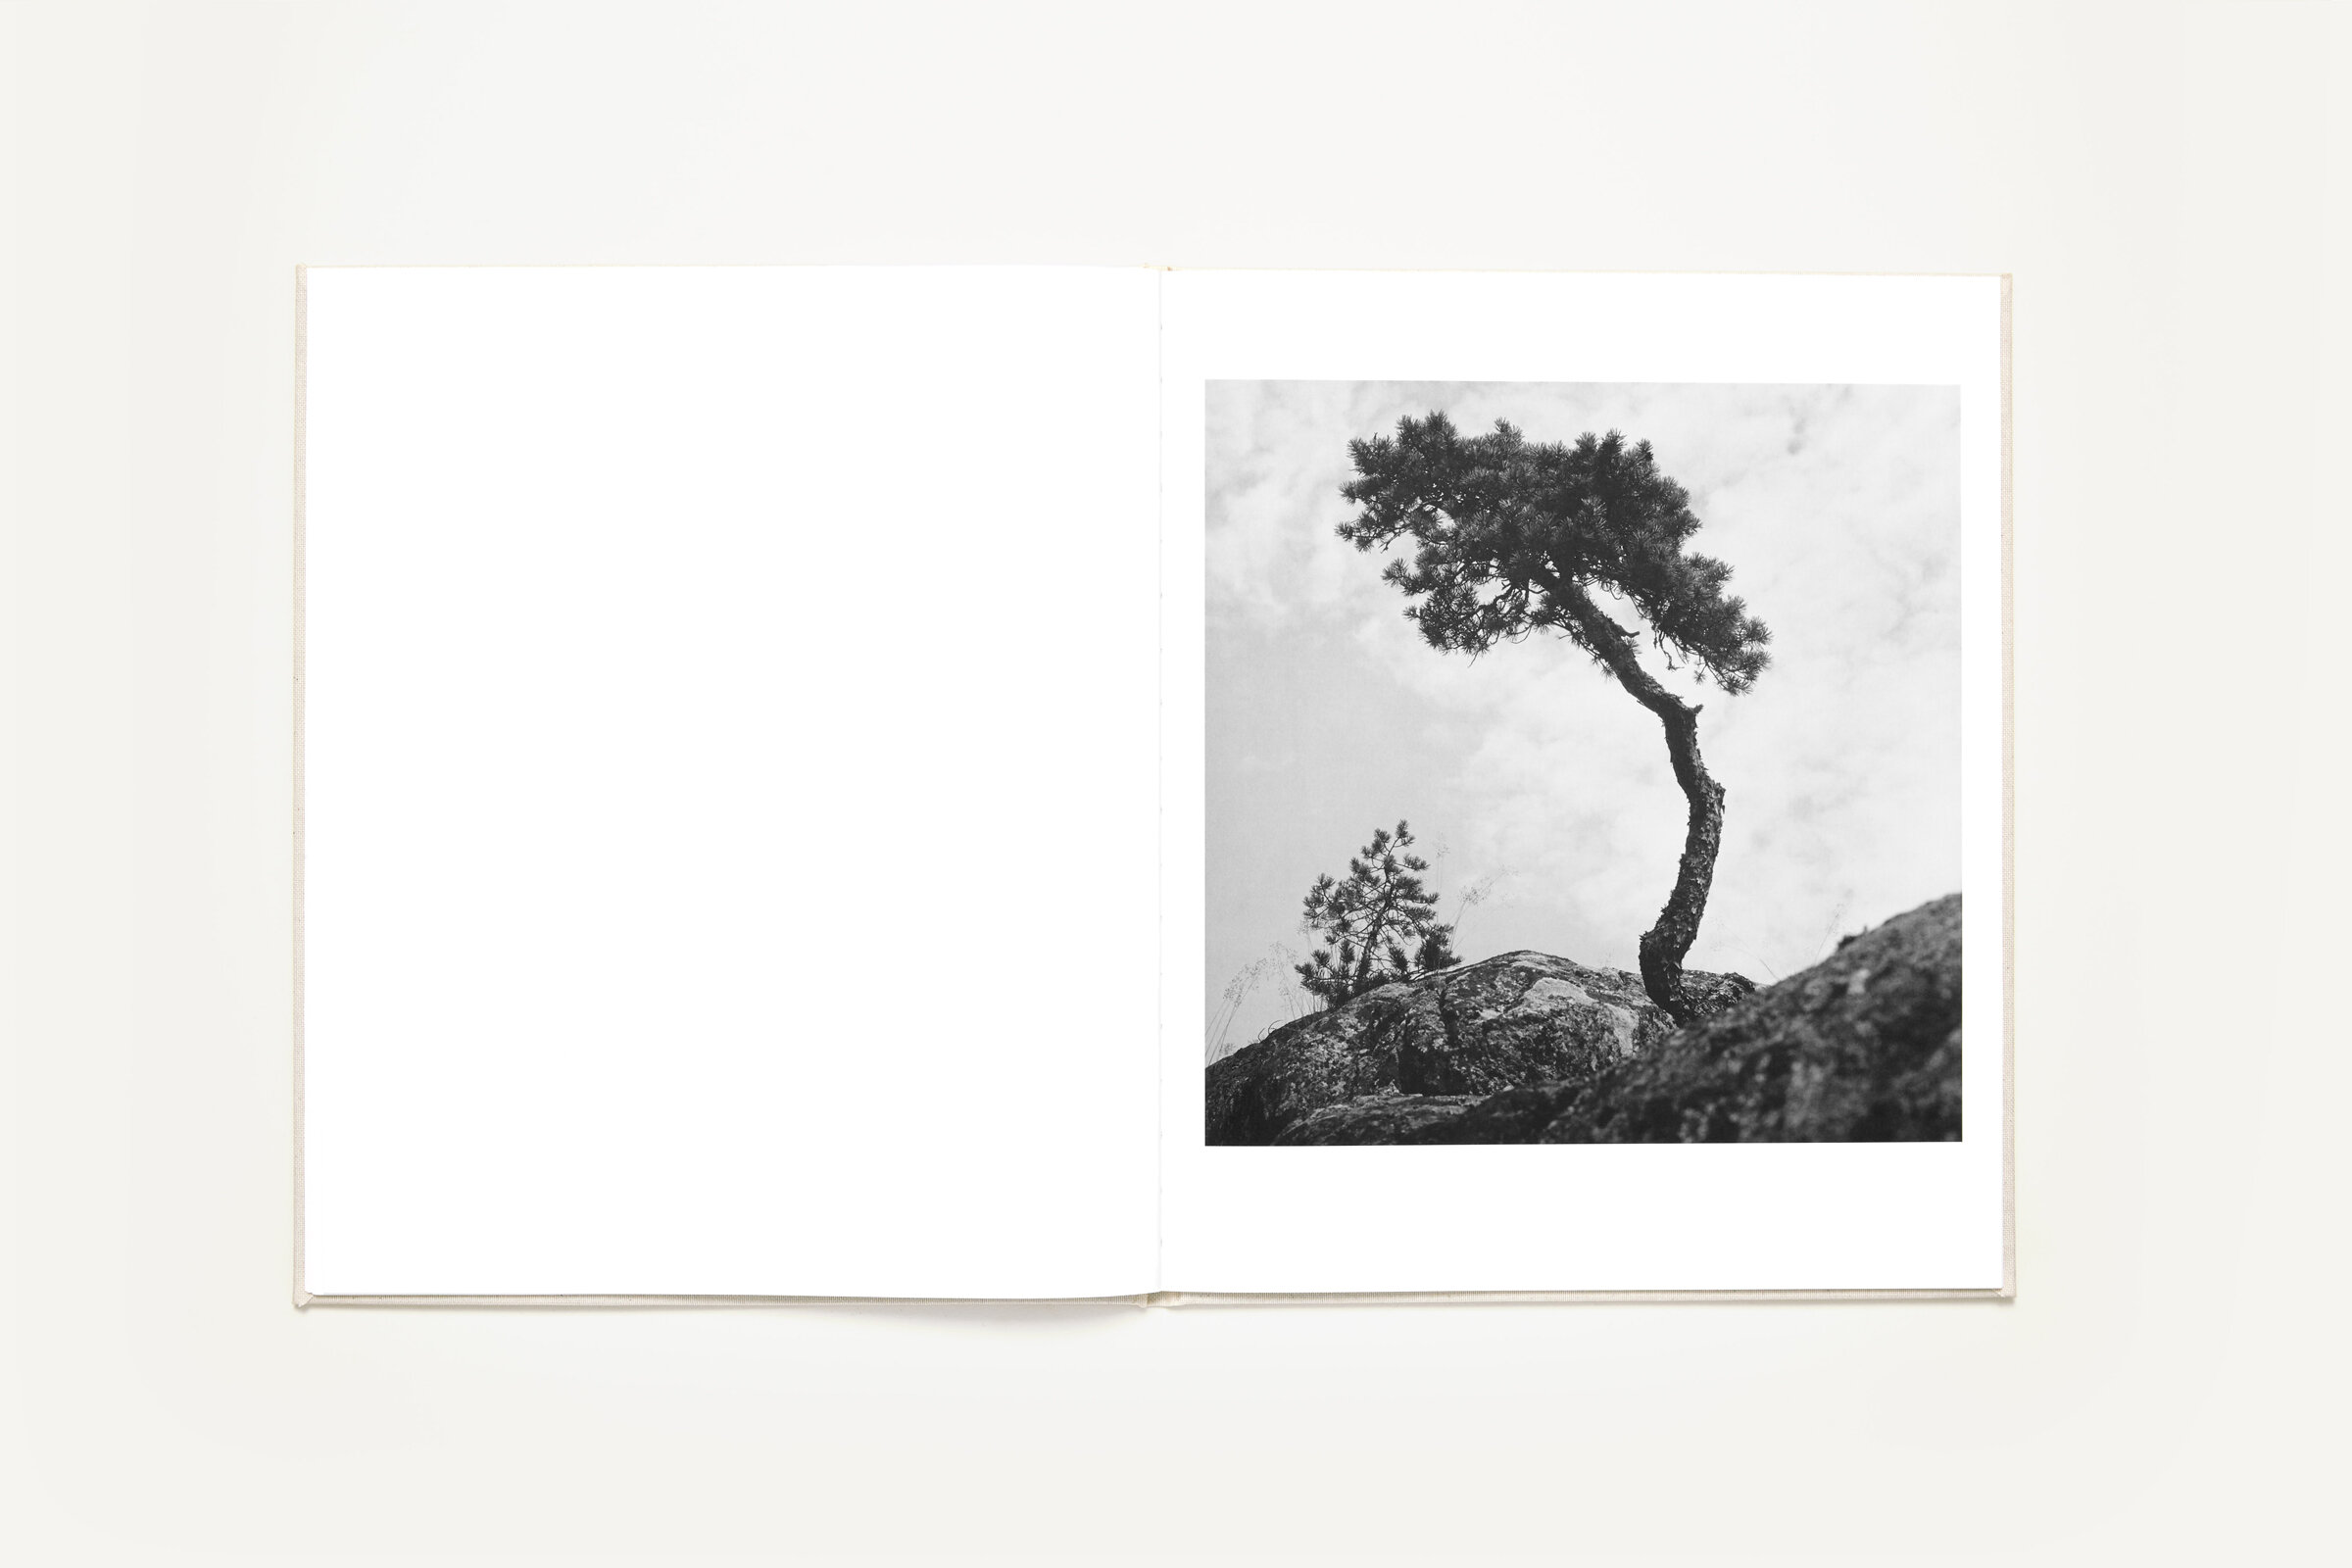 Ur boken "Träd" av Gunnar Smoliansky.